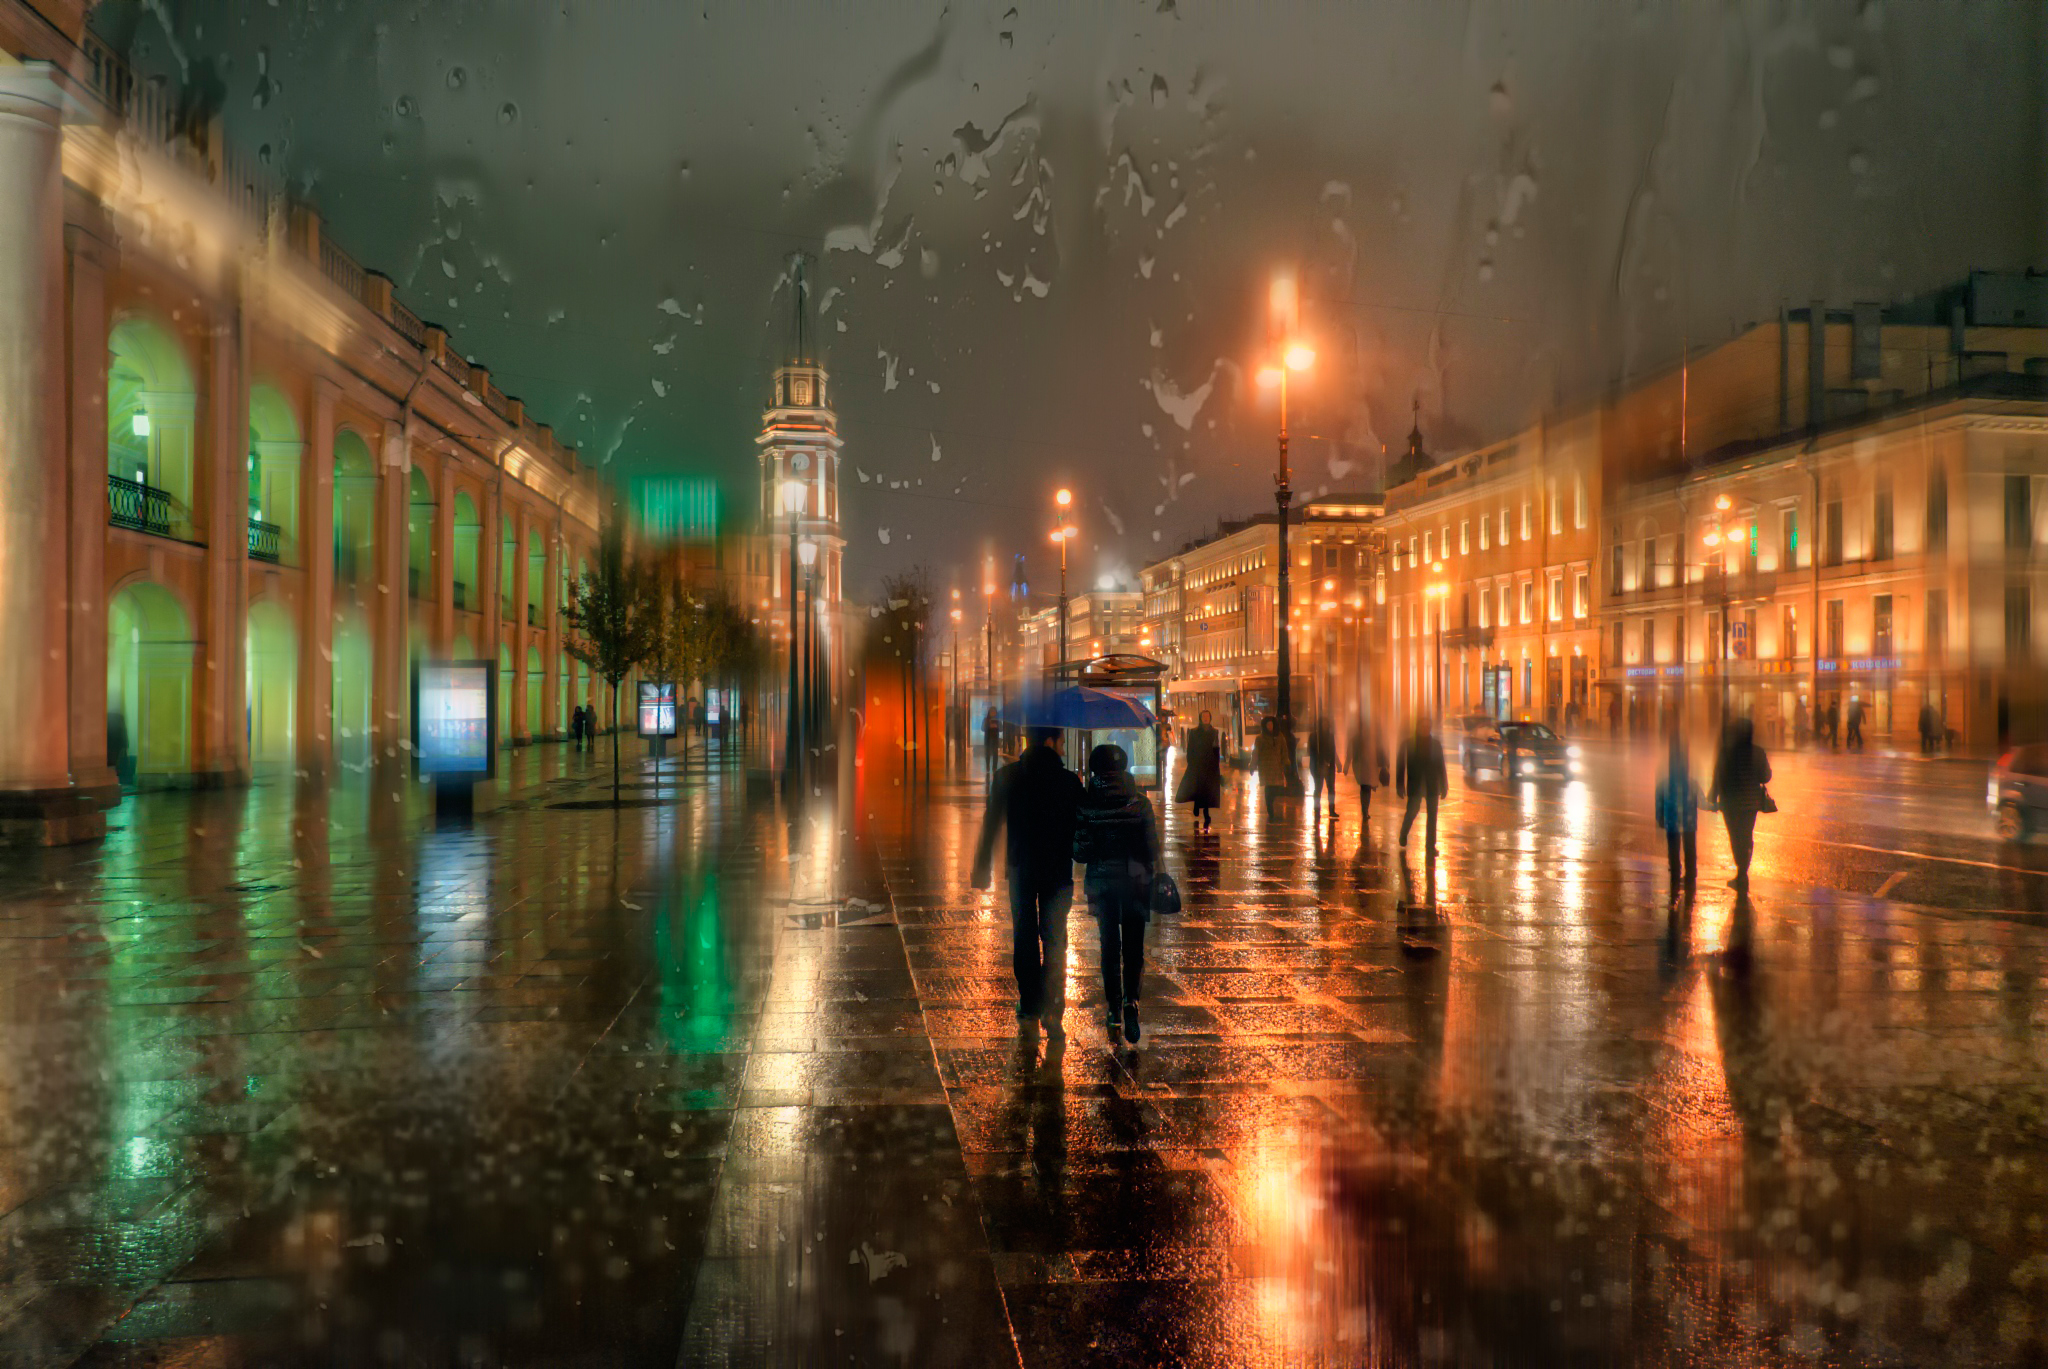 Wallpaper - Evening Rain , HD Wallpaper & Backgrounds